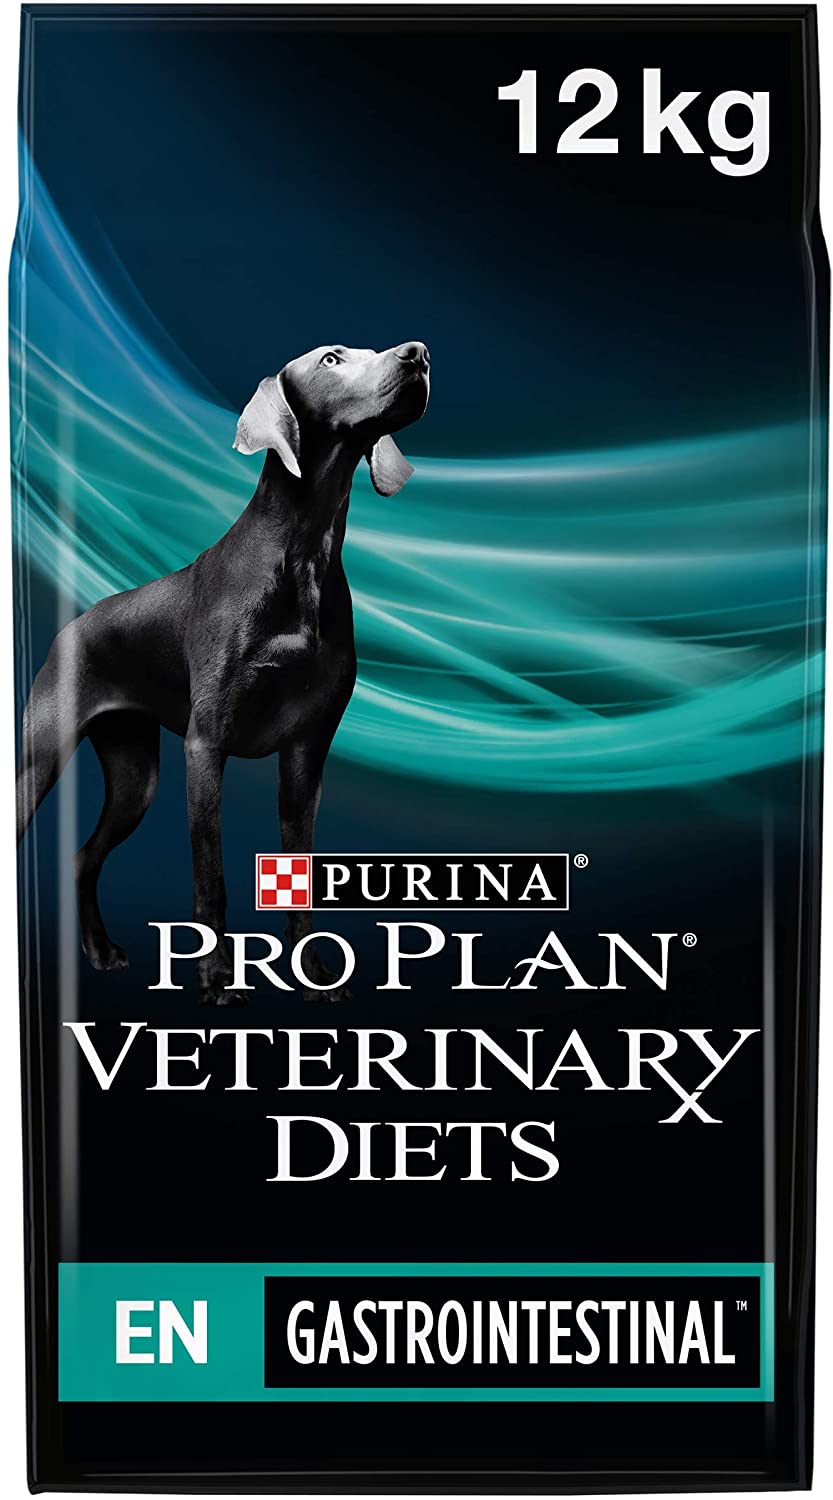  Purina Pro Plan Vet Canine En 12Kg, 12 kg 